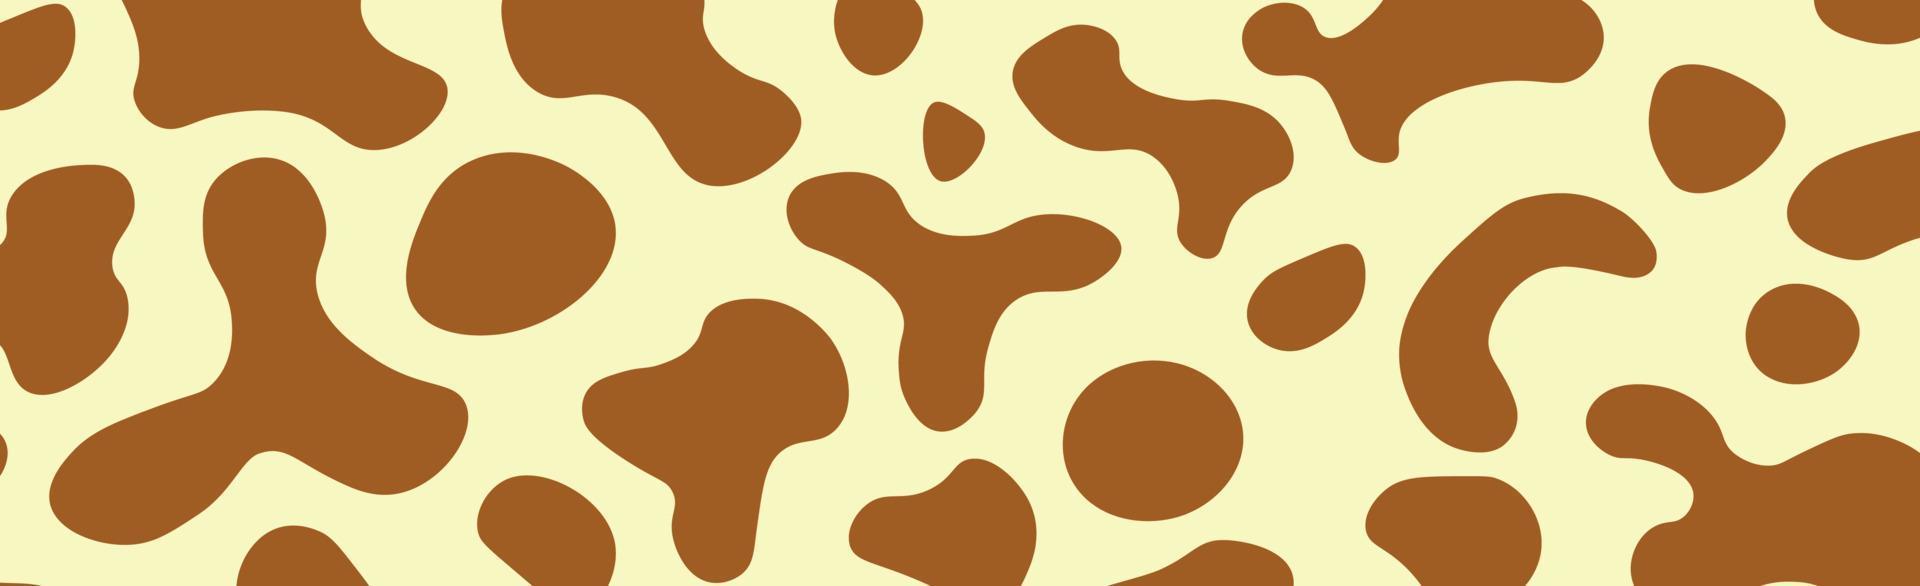 Panorama-Textur der Pelzhaut Afrikanische Giraffe - Vektor